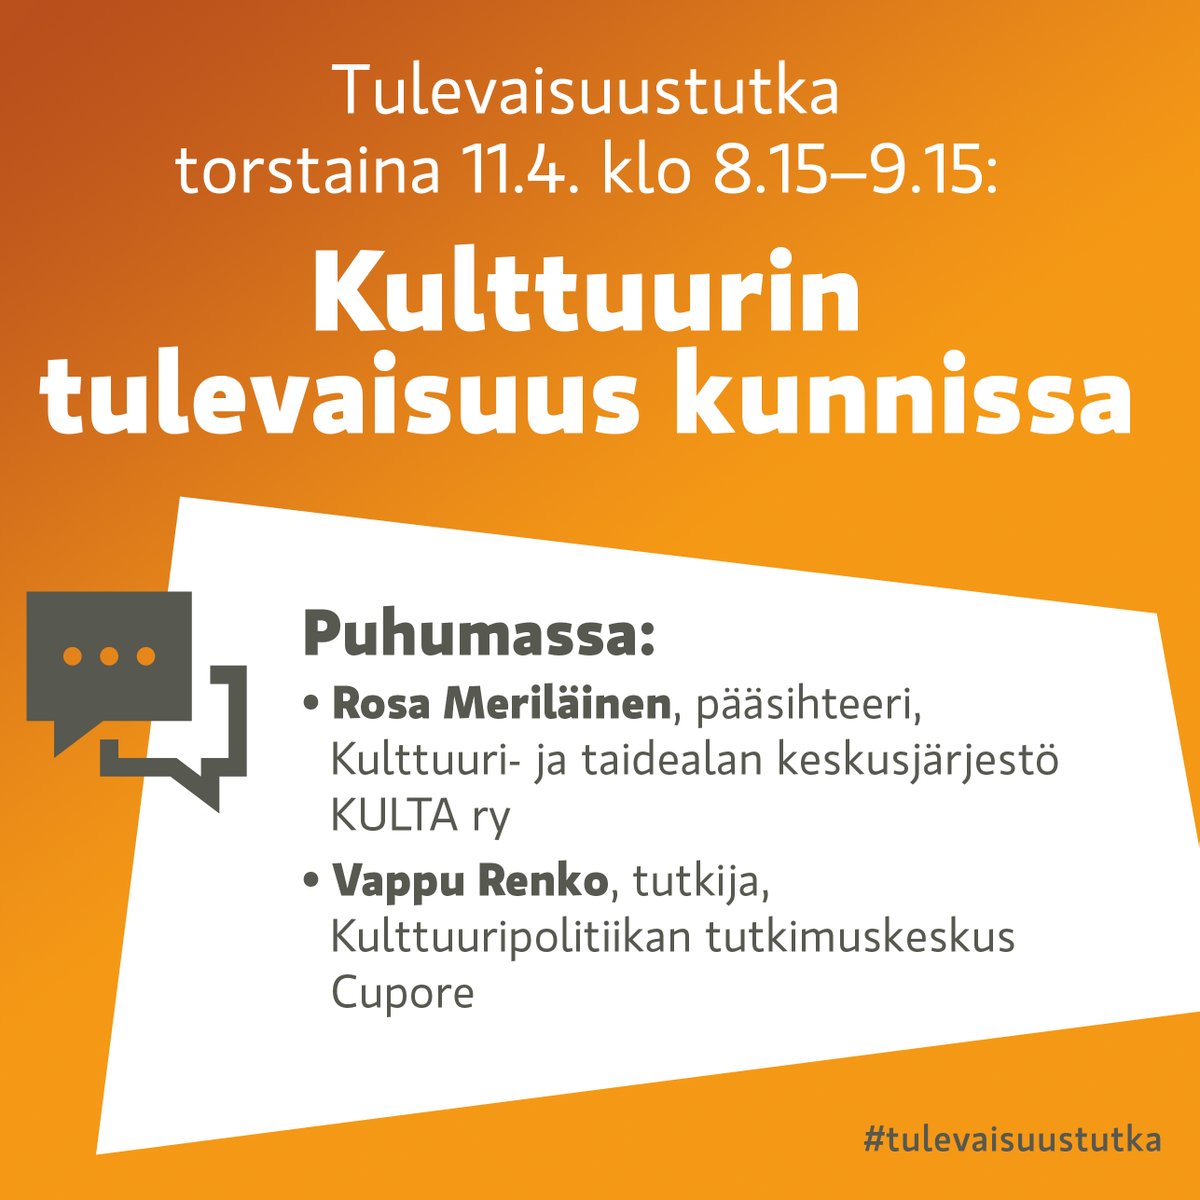 #Tulevaisuustutka-webinaarissa to 11.4. keskustellaan kulttuuripoliittisesta selonteosta ja #kulttuuri​n tulevaisuudesta Uudenmaan kunnissa. Kuulemme tulevista muutoksista ja kulttuurin alueellisista rakenteista. Lisätietoja tilaisuudesta: uudenmaanliitto.fi/kulttuurin-tul… #Uusimaa